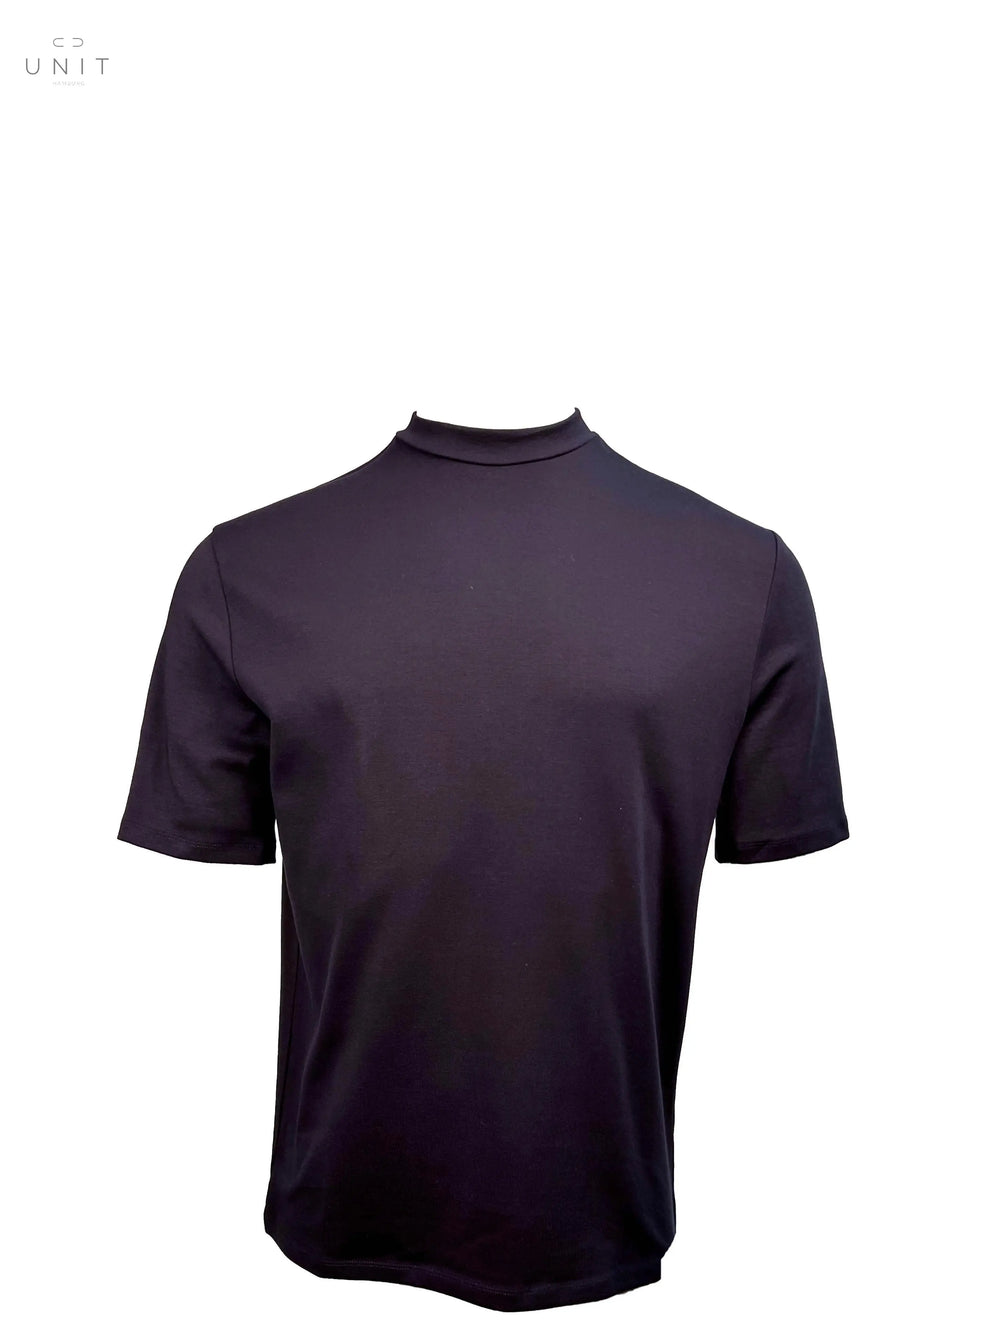 Kiefermann 432-21127 Paddy Heavy T-Shirt crew neck black  T-Shirt aus dickerer Qualität sitzt perfekt und glatt 98% Organic Cotton 2% Elastan 30 Grad Feinwäsche Made in Portugal